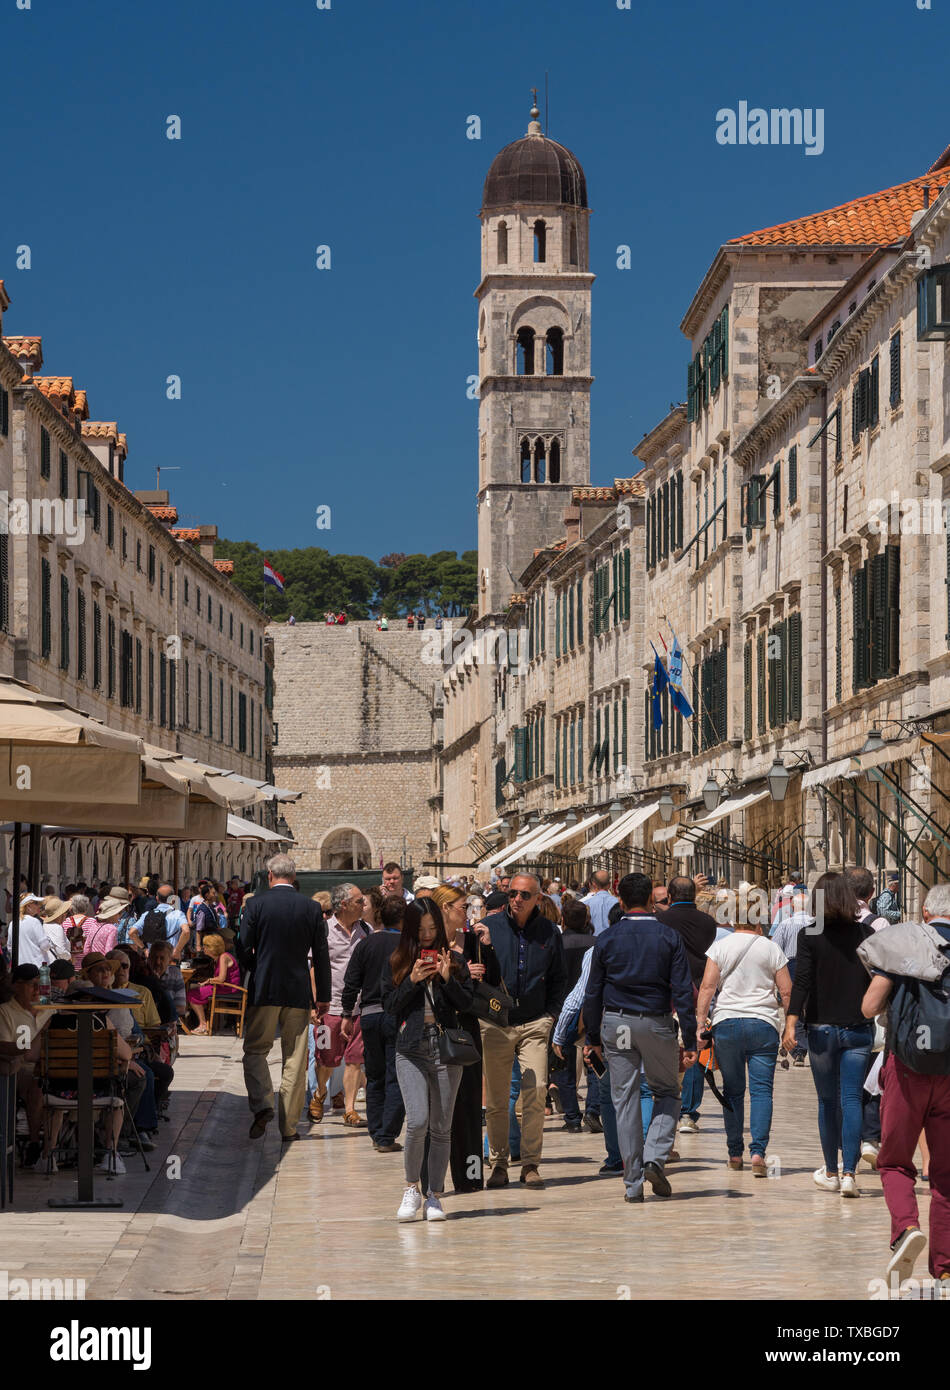 La folla di turisti nella città vecchia di Dubrovnik in Croazia Foto Stock